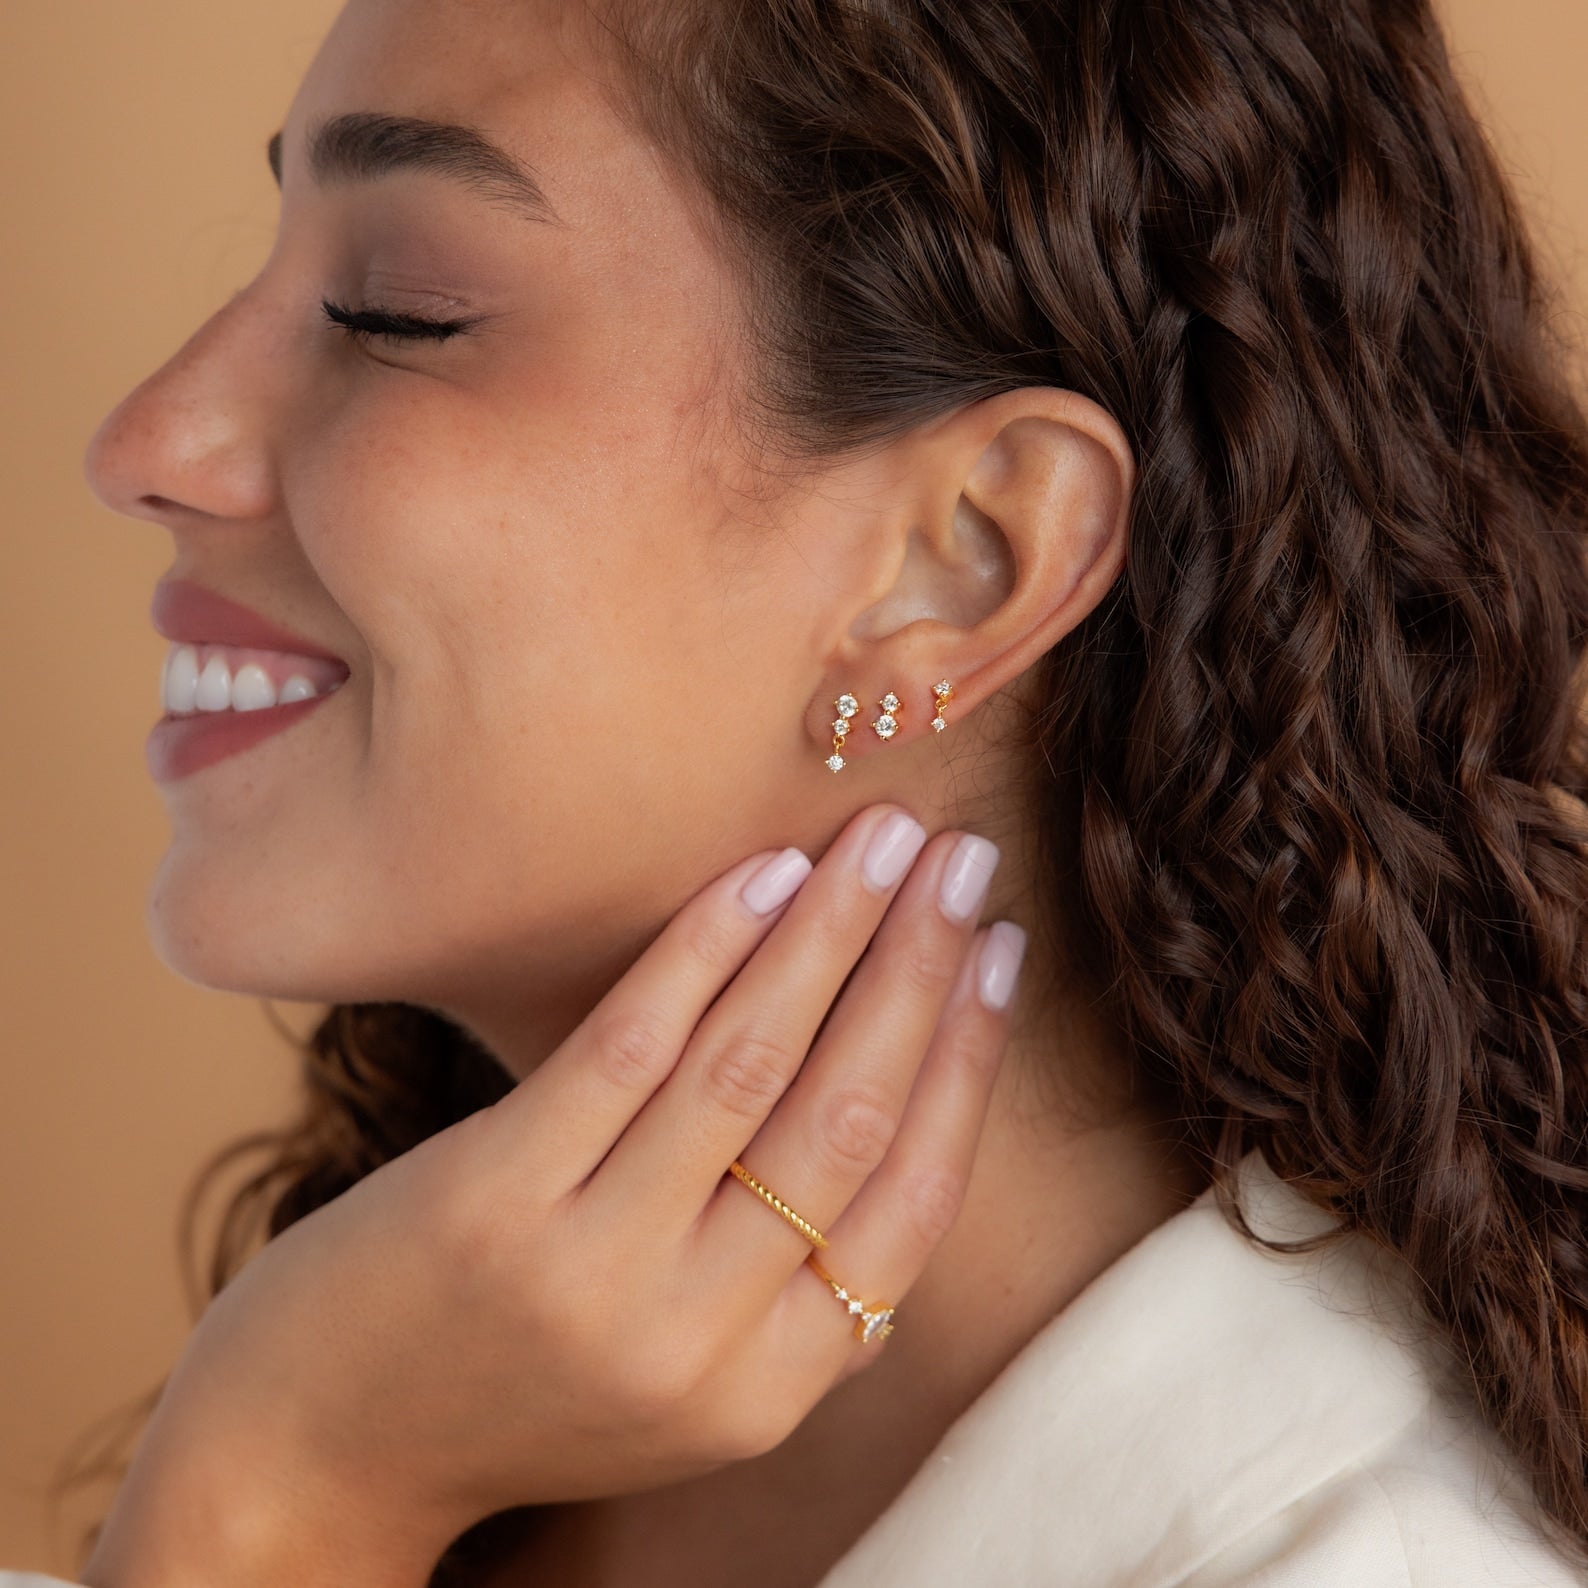 Spike Earring, Gold Spike Earring, Set of 3 Earring, Dainty Hole to Hole  Earring, Minimalist Earring, Chain Earring, Dangle Chain Earring - Etsy |  Spike earrings, Etsy earrings, Minimalist earrings